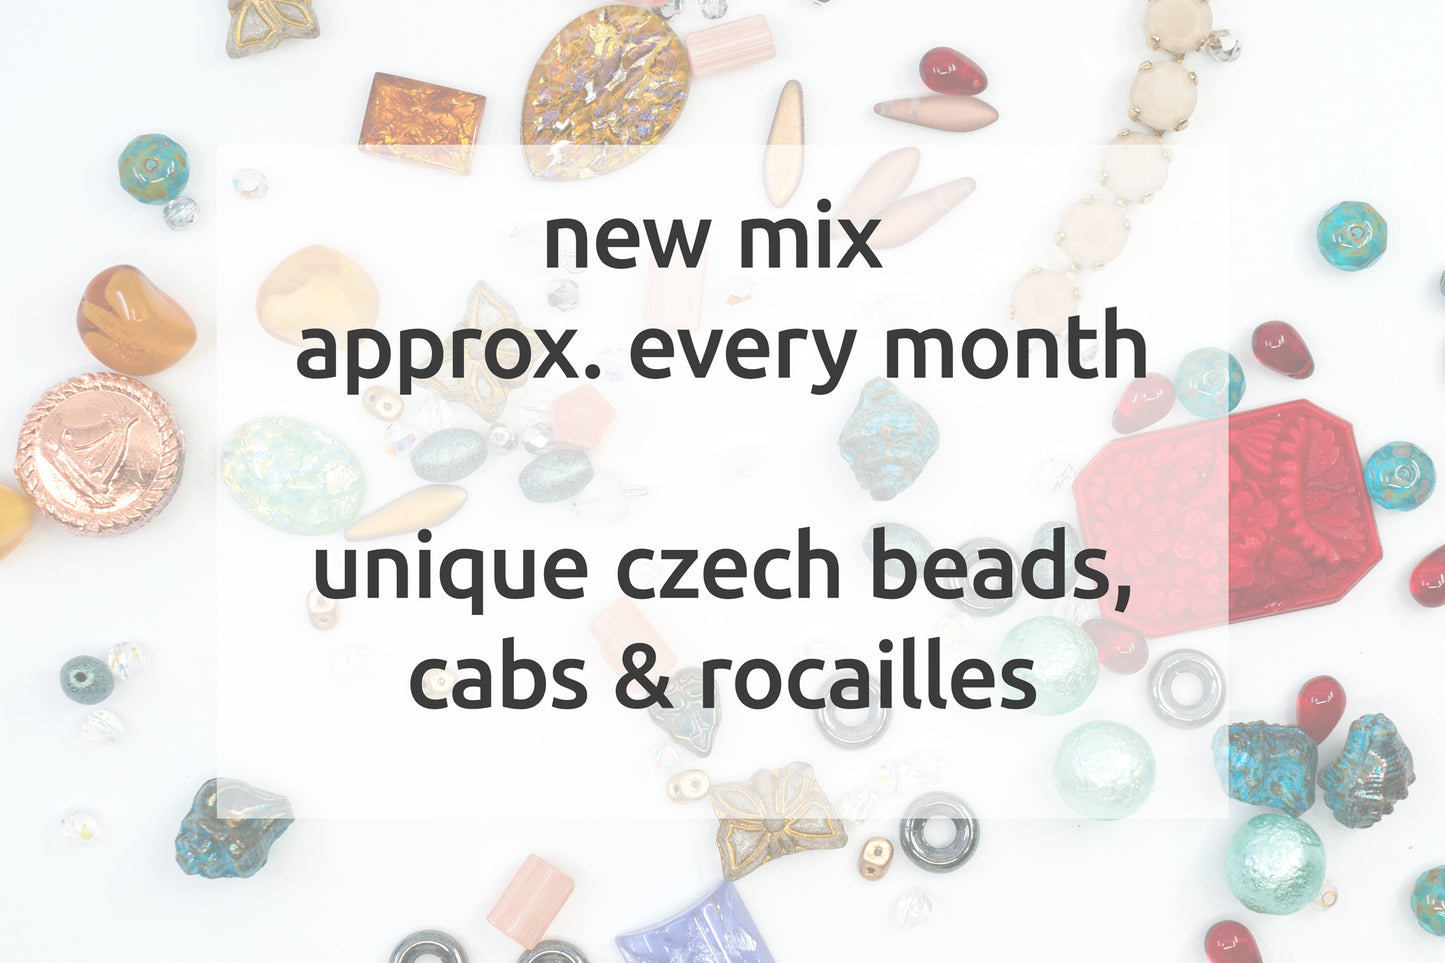 惊喜组合 - 捷克玻璃珠和出租车 - 复古和现代玻璃珠